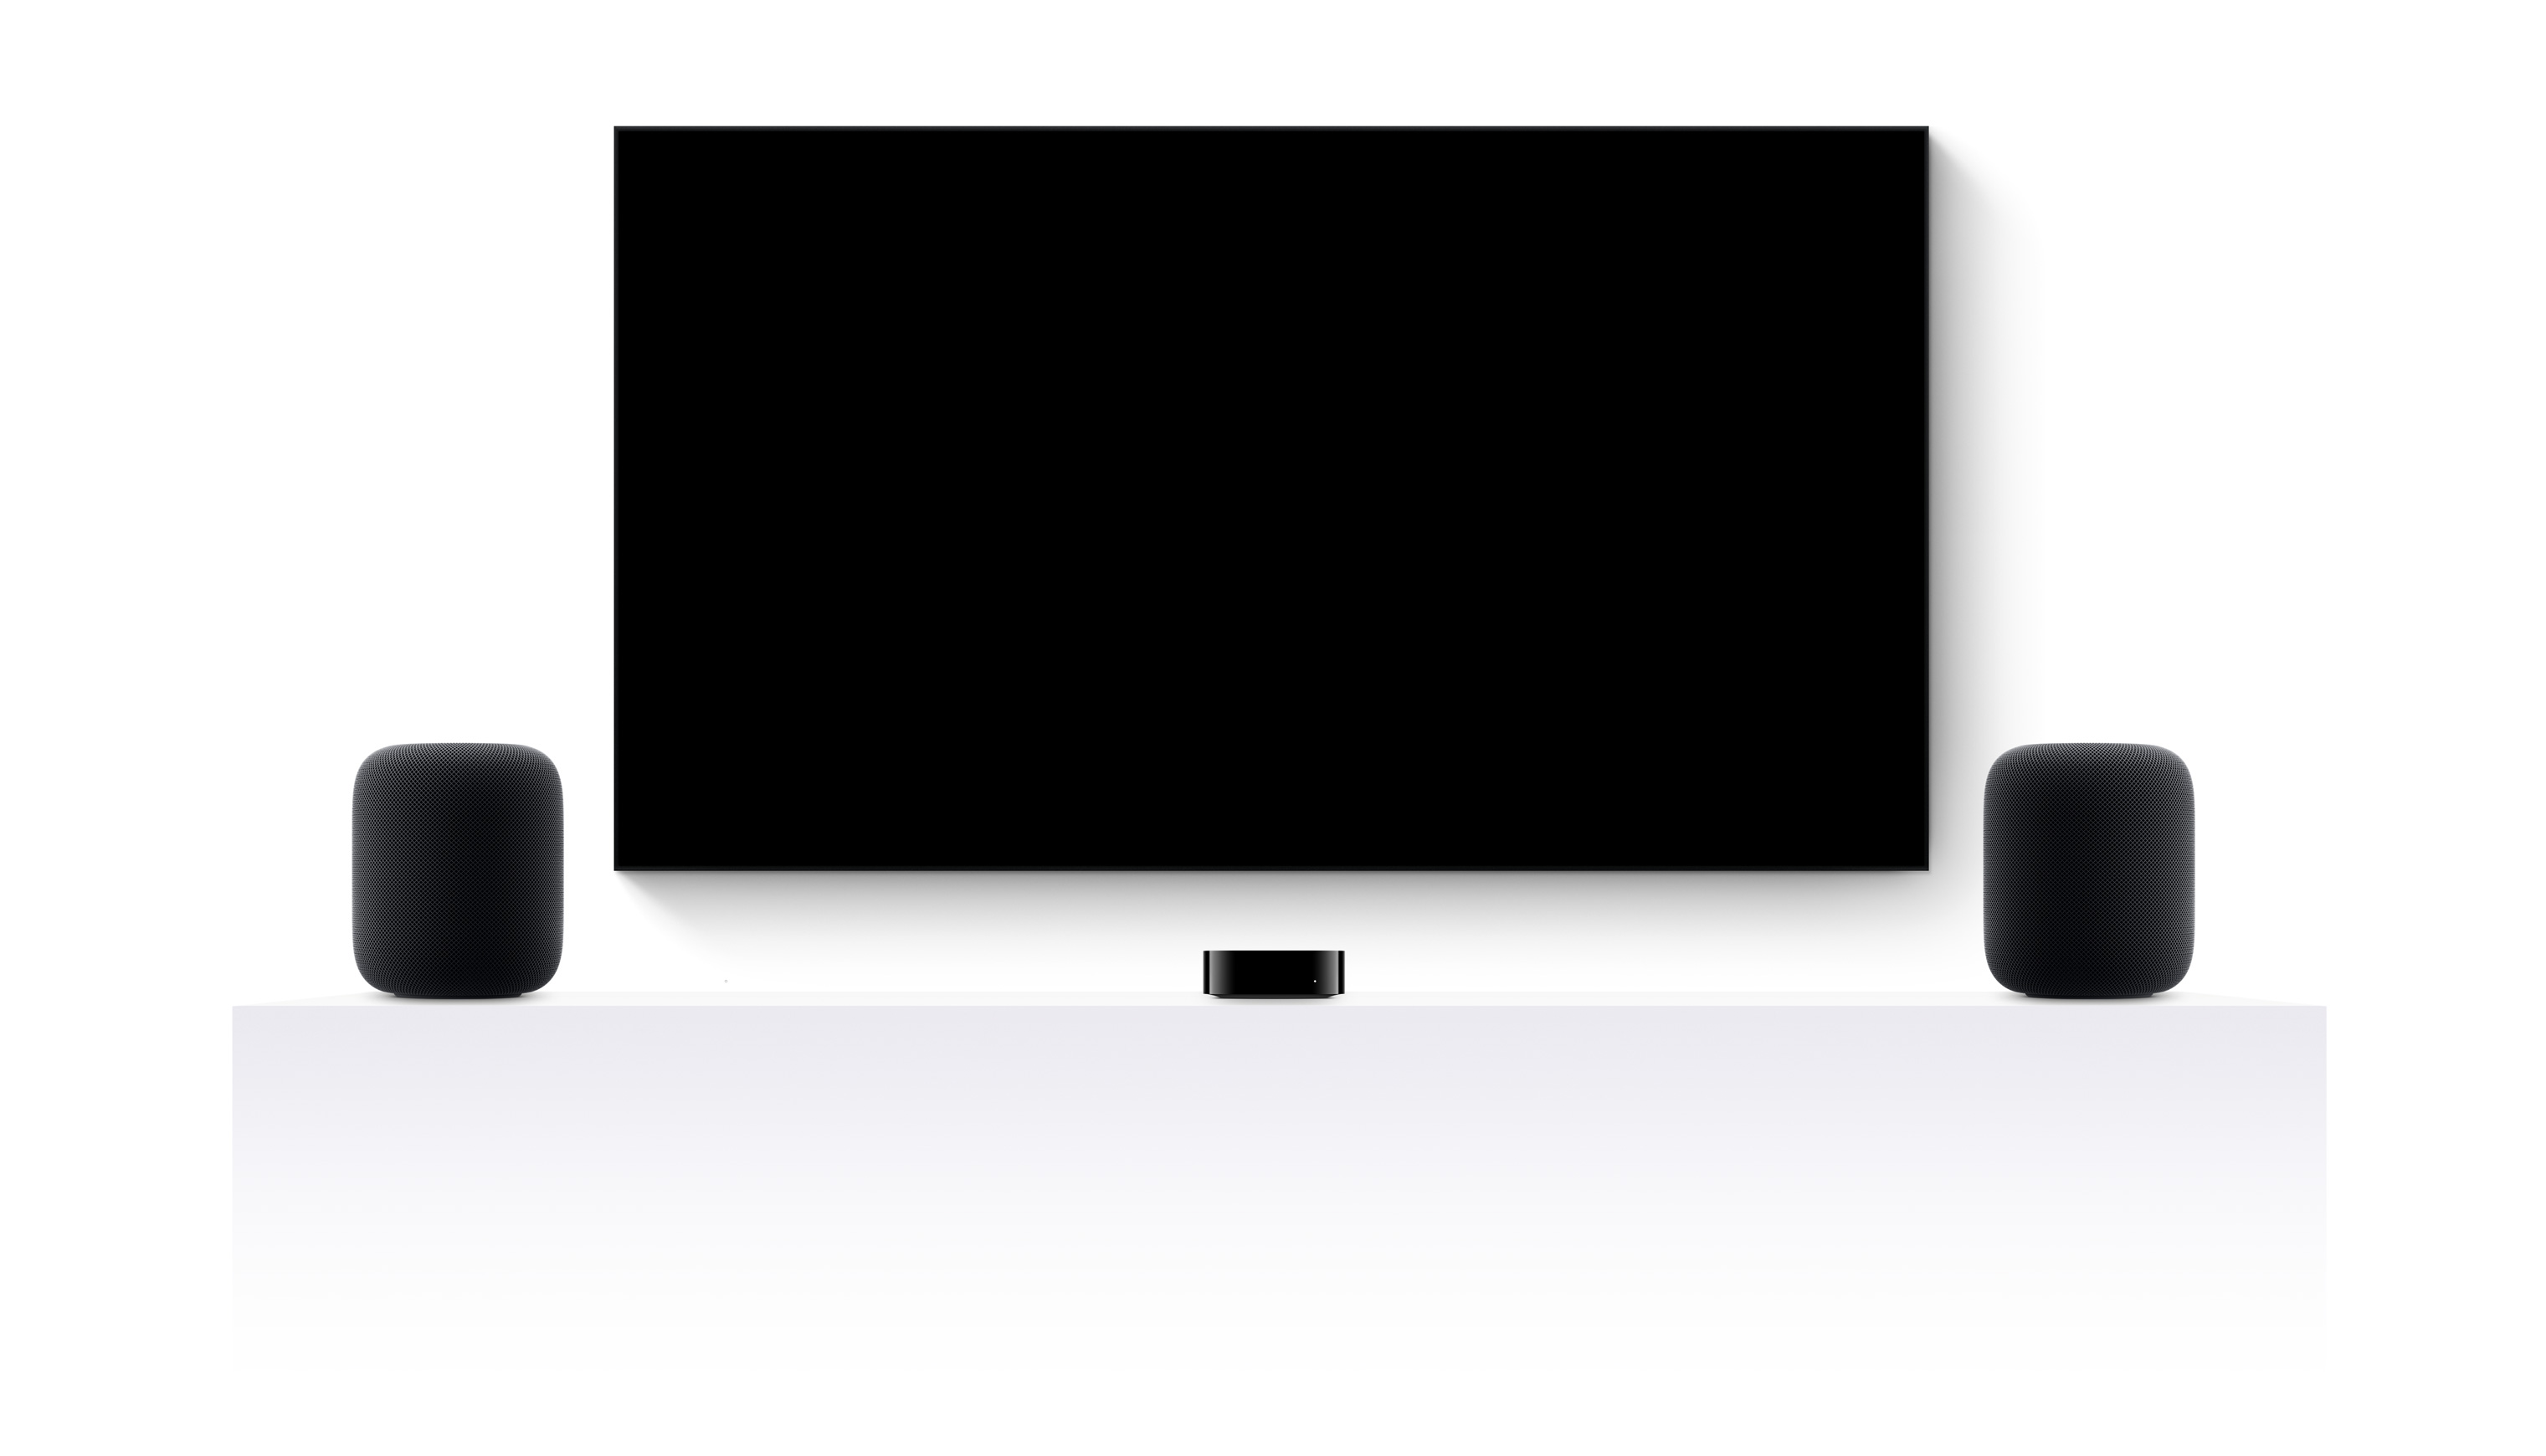 Une Apple TV 4K, deux HomePod et un téléviseur à écran plat diffusant un montage de plusieurs extraits de films et séries Apple TV+